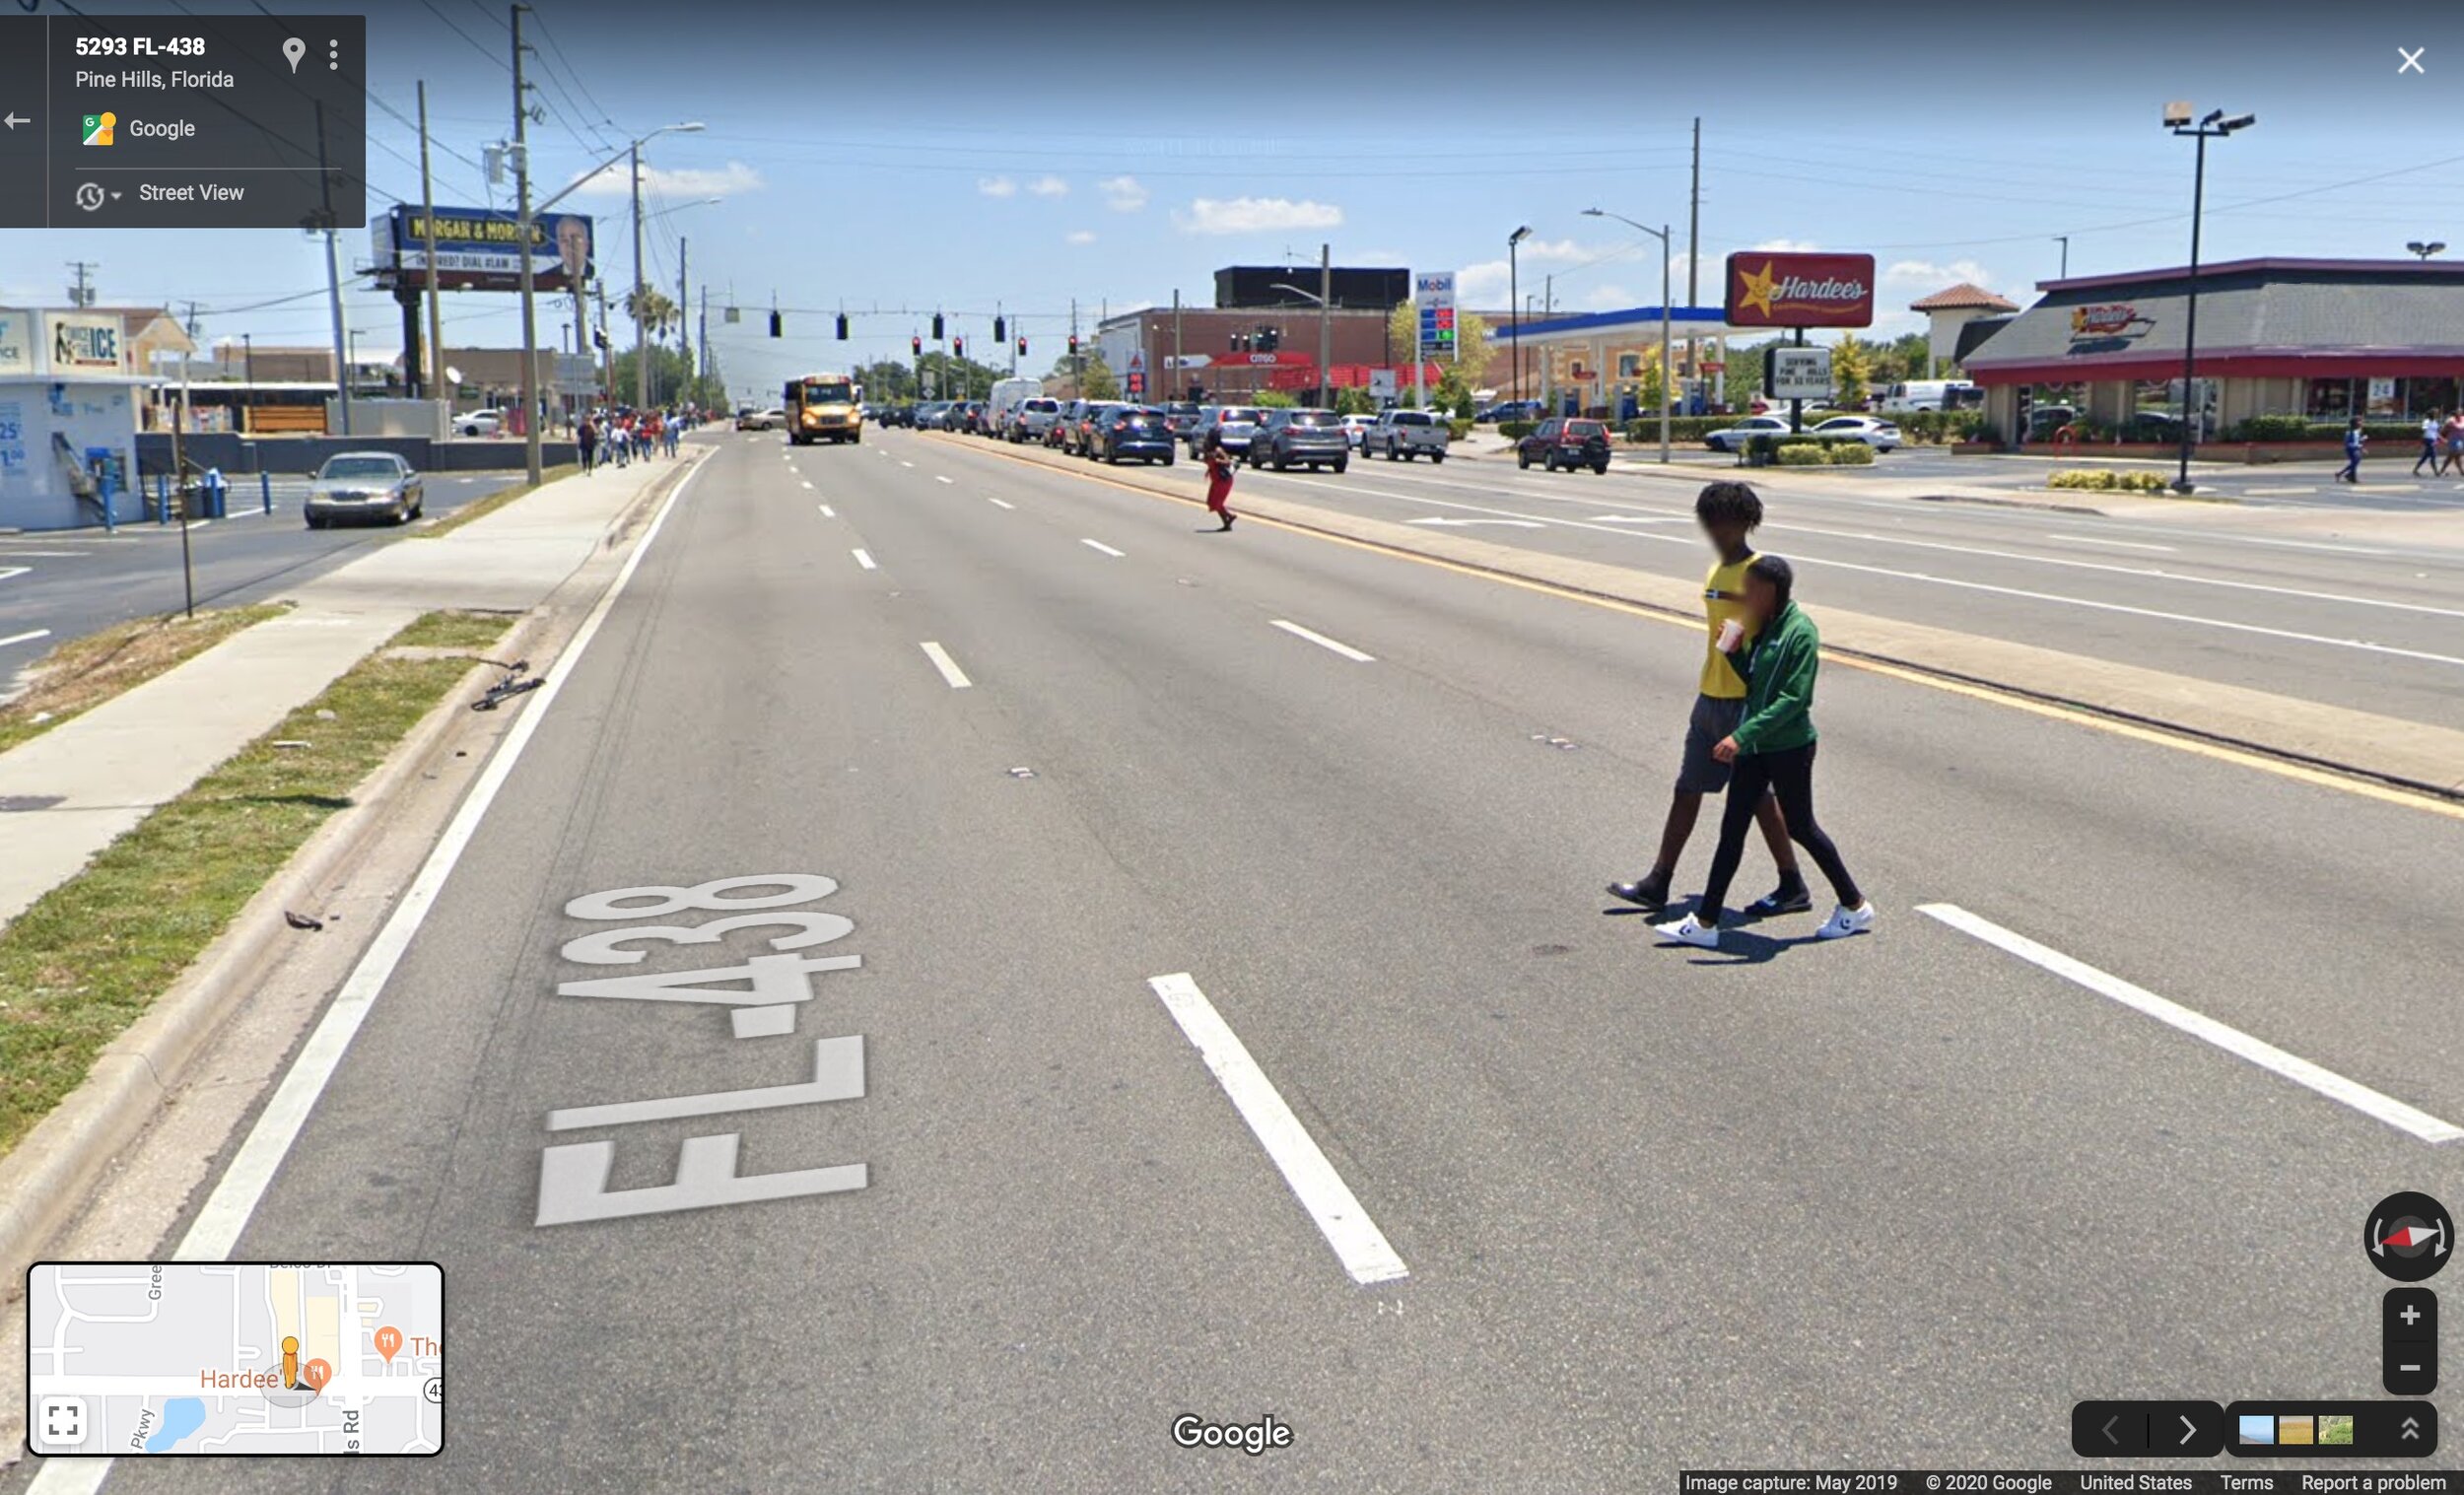  Se puede ver a varios grupos de personas arriesgarse y cruzar “the stroad” (la calle) a mitad de cuadra, en lugar de salirse del camino para caminar hasta la intersección, esperar largo tiempo en un semáforo en rojo y cruzar en un cruce de peatones 